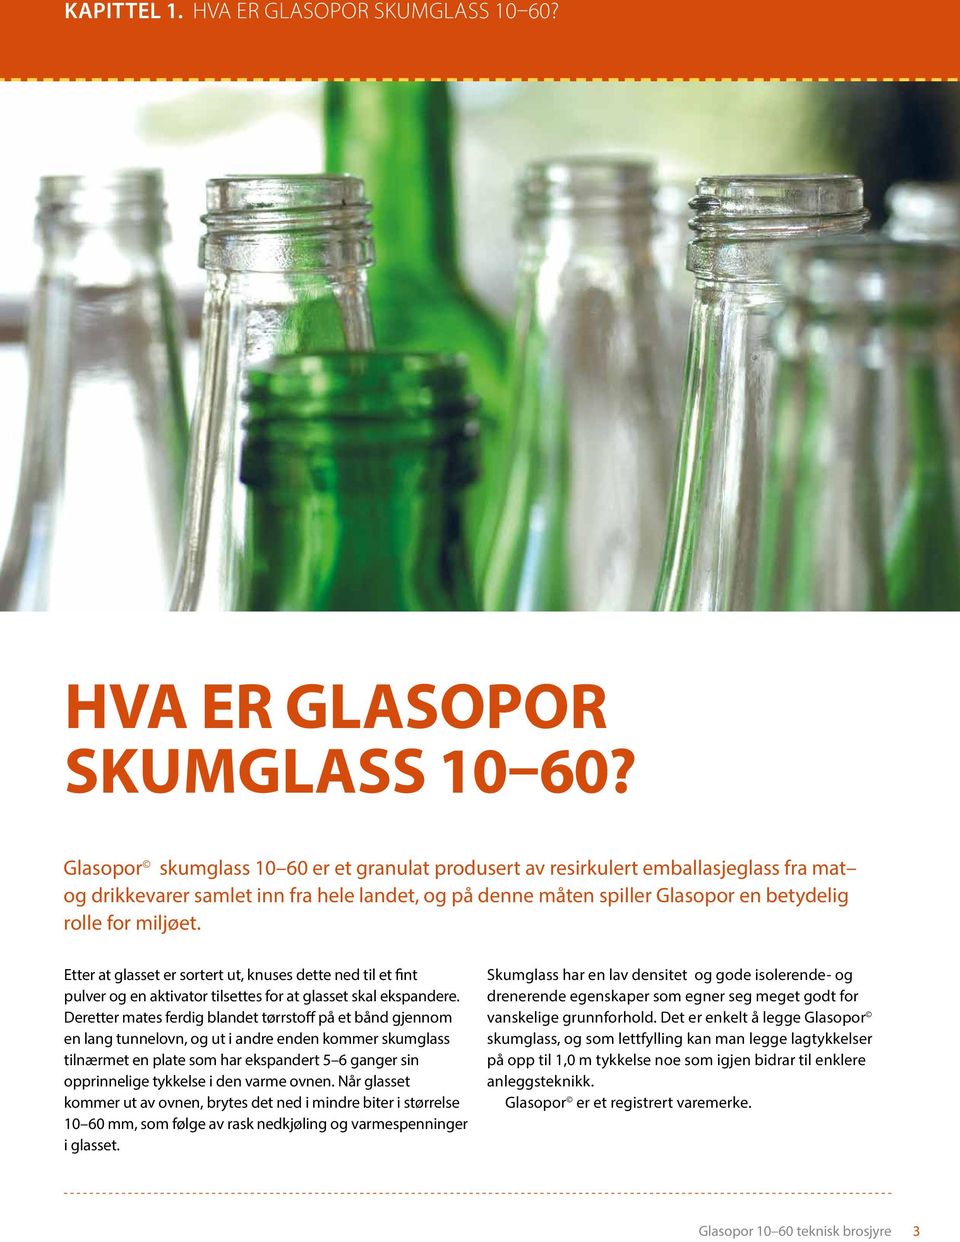 Glasopor skumglass 10 60 er et granulat produsert av resirkulert emballasjeglass fra mat og drikkevarer samlet inn fra hele landet, og på denne måten spiller Glasopor en betydelig rolle for miljøet.